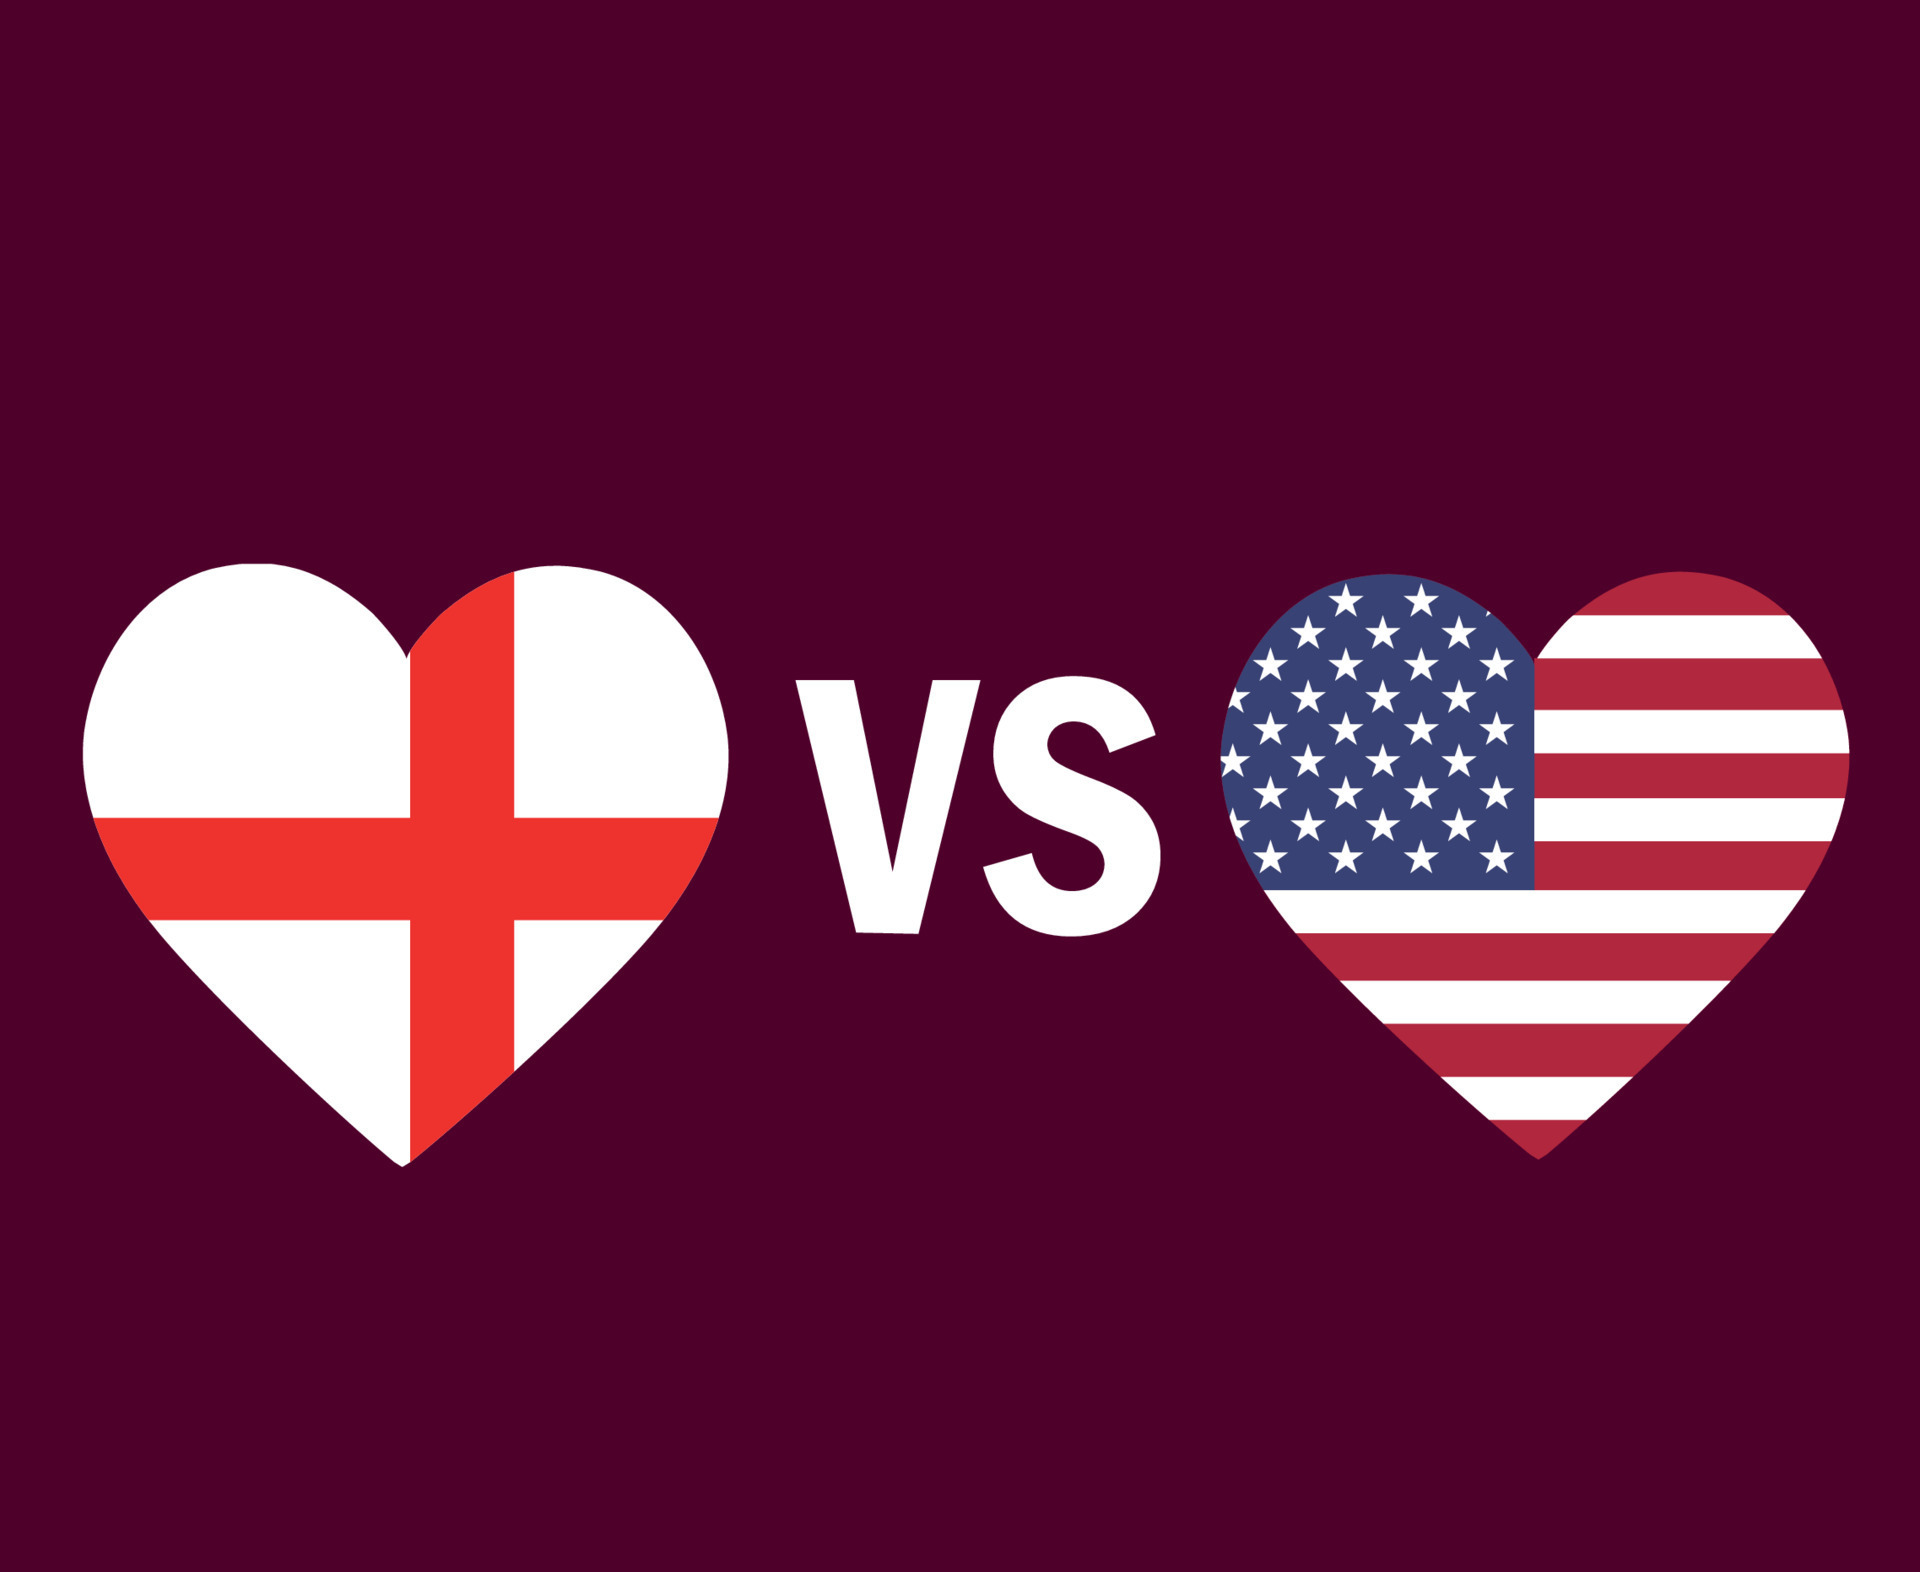 إنجلترا ضد الولايات المتحدة تخمينات وتحليل المباراة